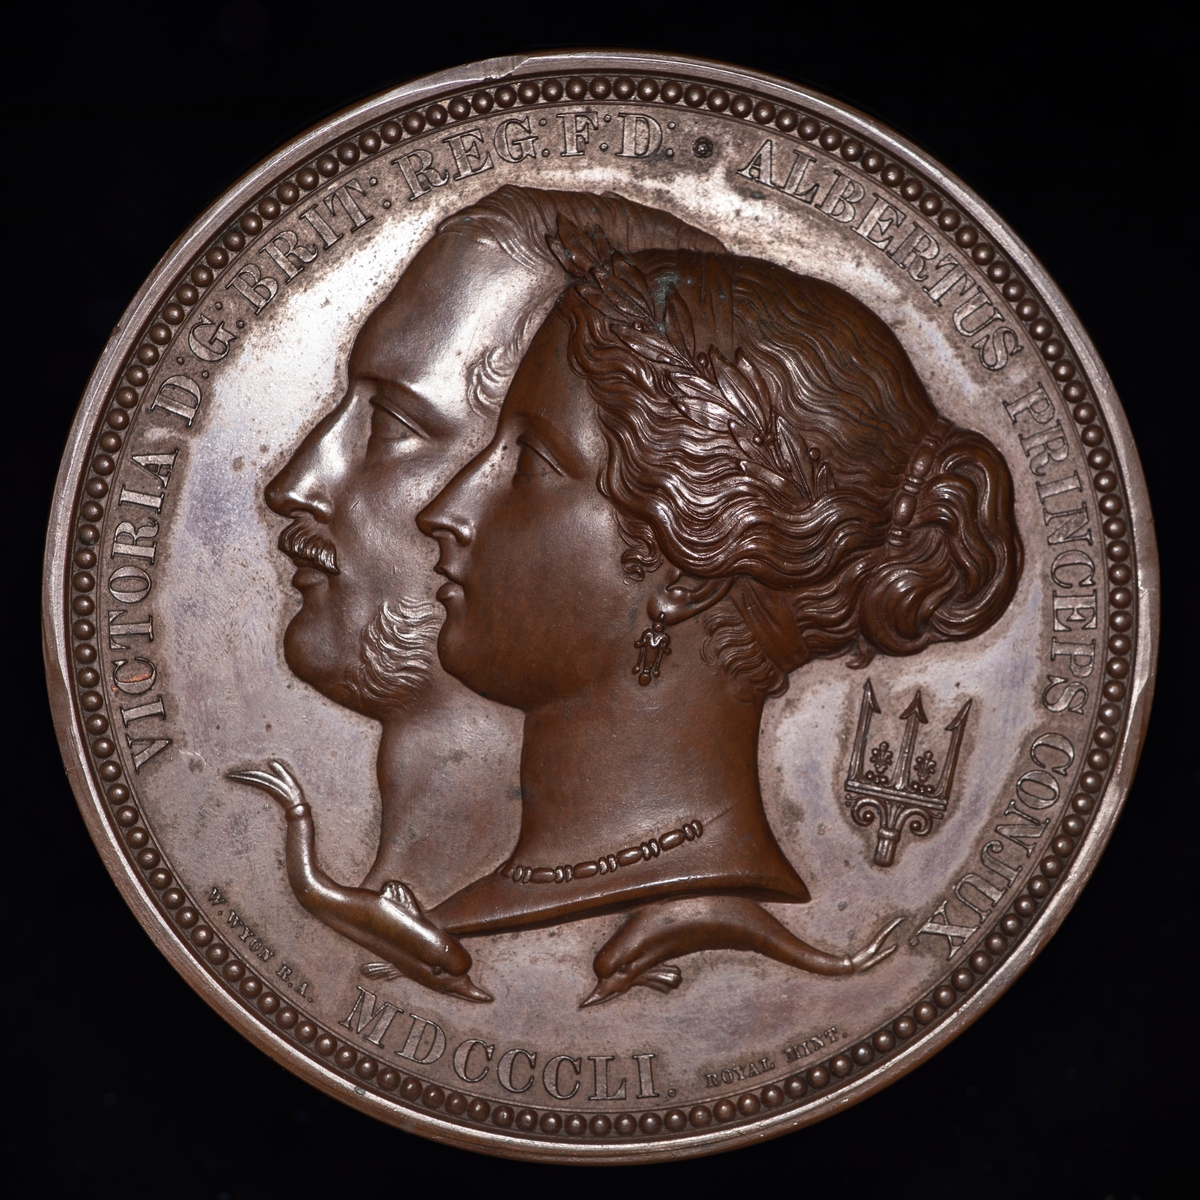 Bronsemedalje fra 1851. På adversen dronning Victoria og prins Albert i profil mot venstre. På reversen er hovedmotivet at en kvinnelig guddom(?) en laurbærkrans til en annen kvinne.